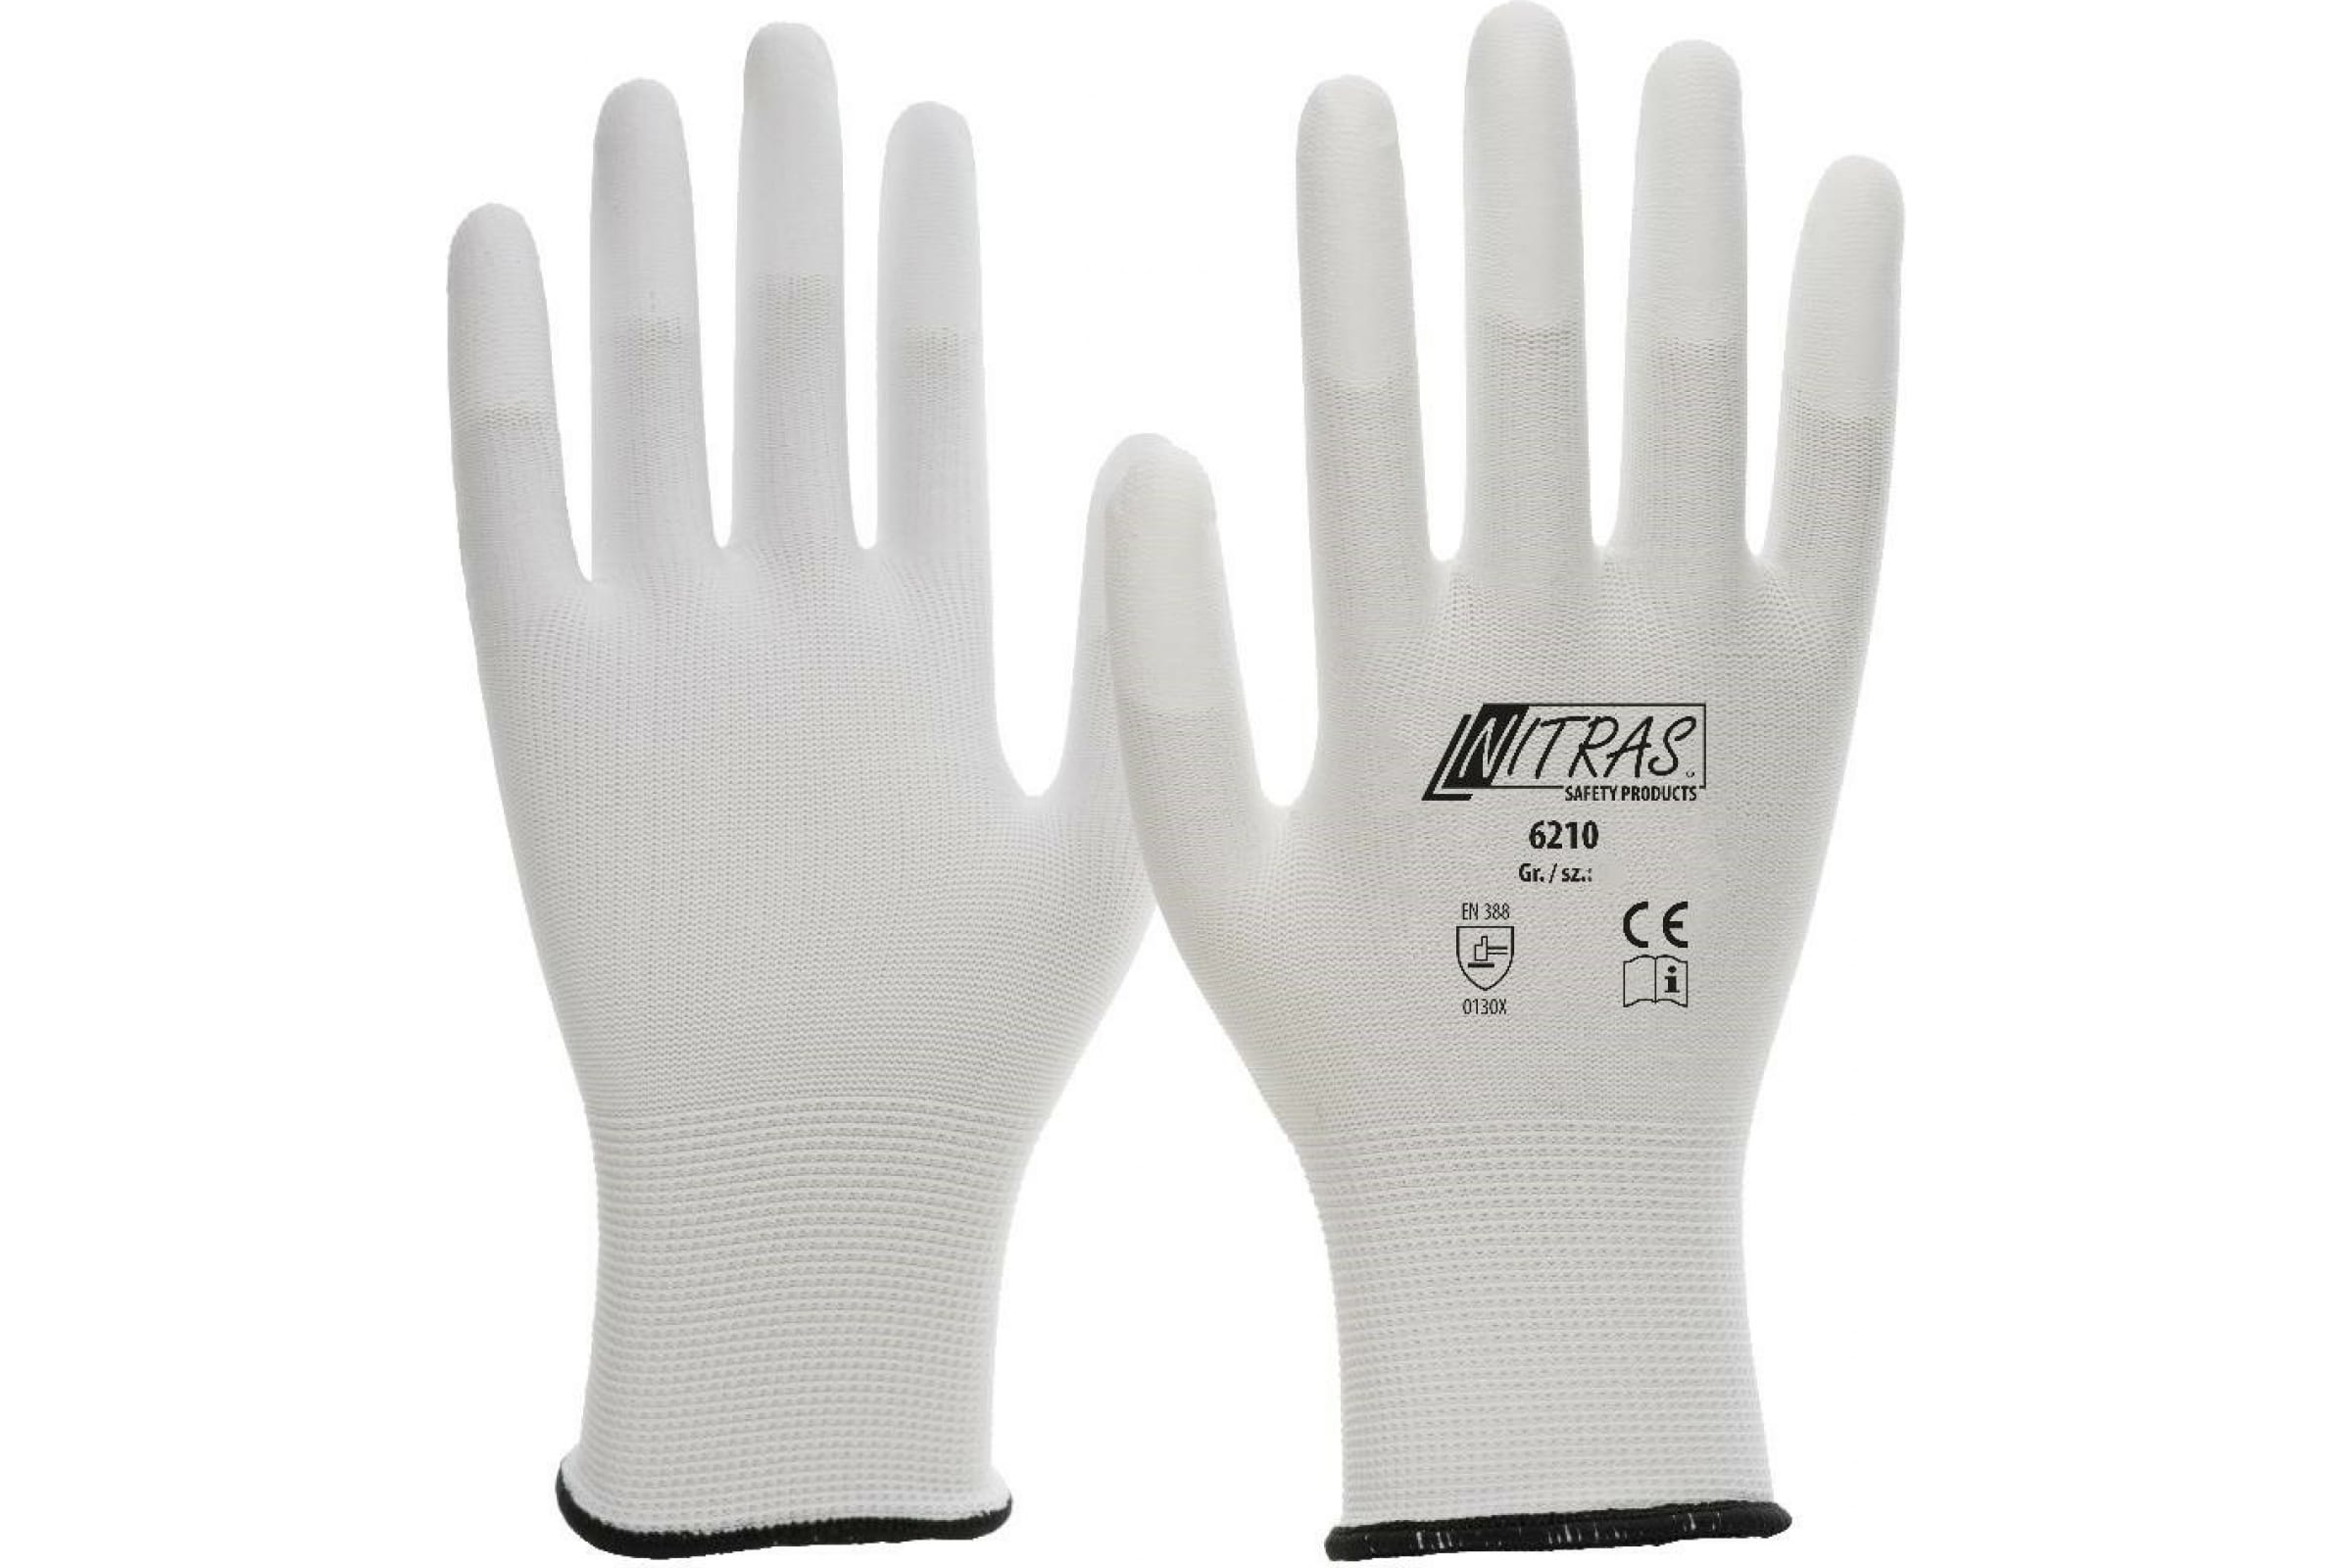 Трикотажные бесшовные перчатки Nitras, белые, ПУ покрытие кончиков пальцев, класс 13G, р.1